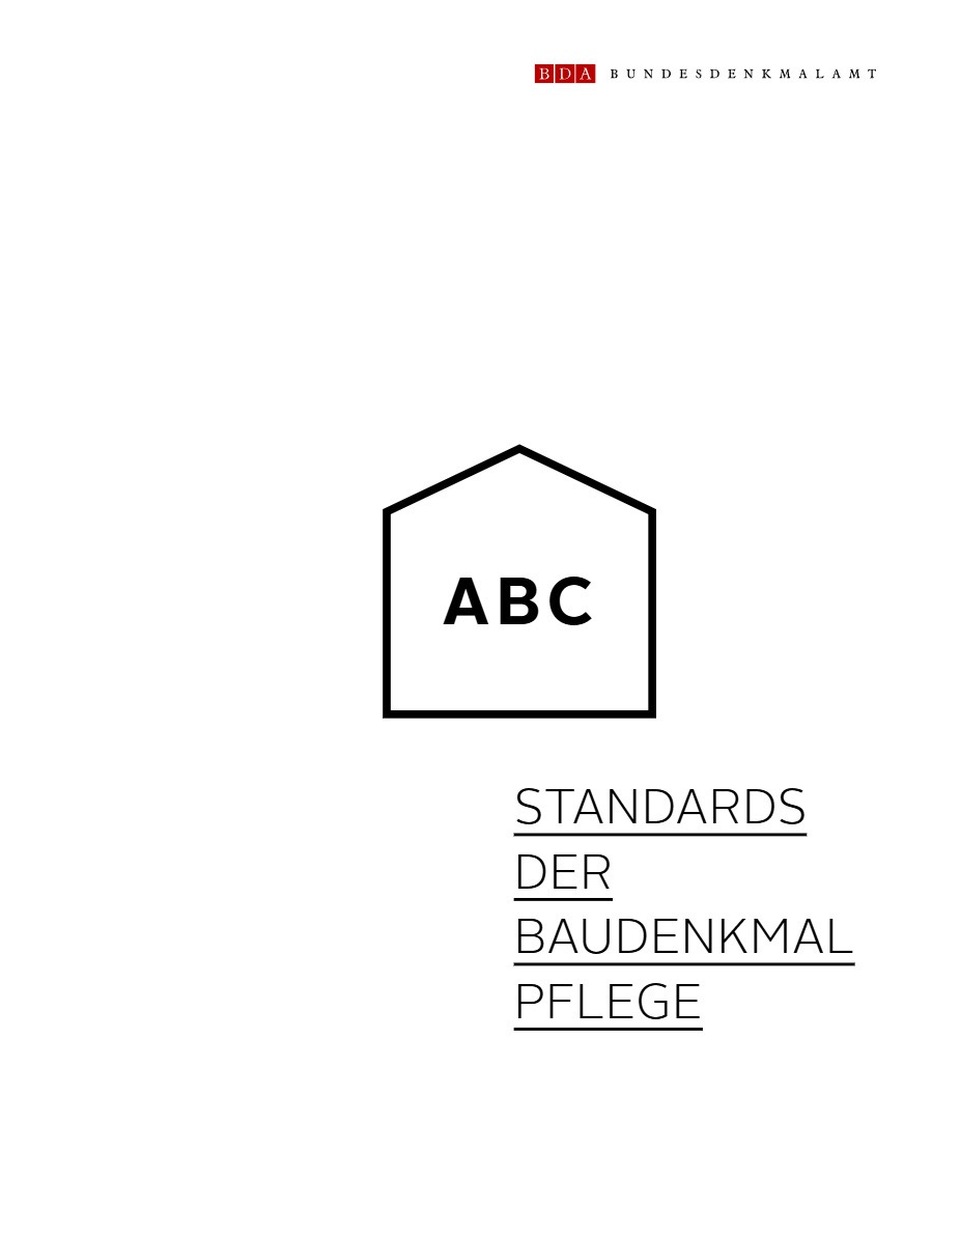 Műemlékvédelmi szakmai ajánlások - Standards der Baudenkmalpflege, Ausztria, Szövetségi Műemléki Hivatal (Bundesdenkmalamt) 2015.
